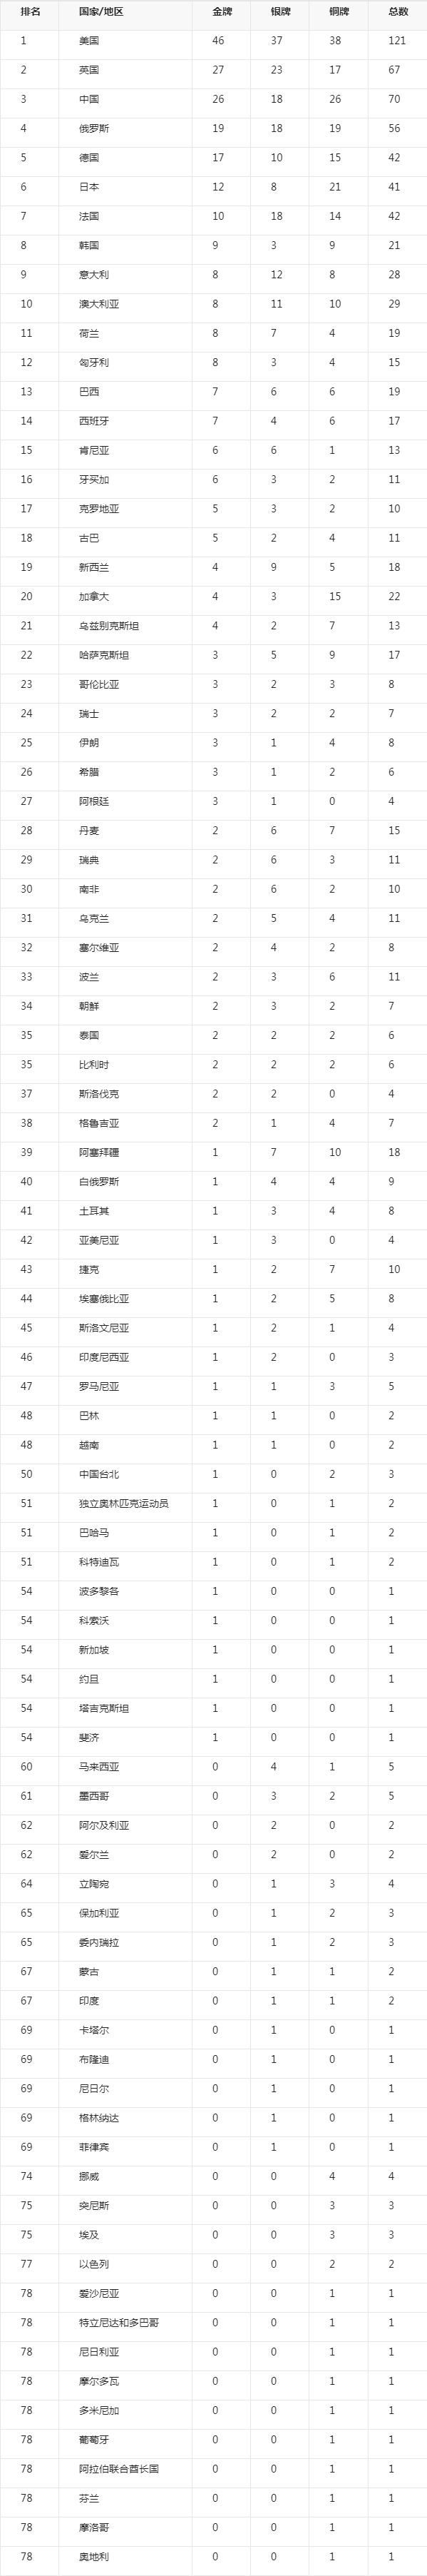 中国历届奥运会金牌数 中国历届奥运会金牌数量统计图